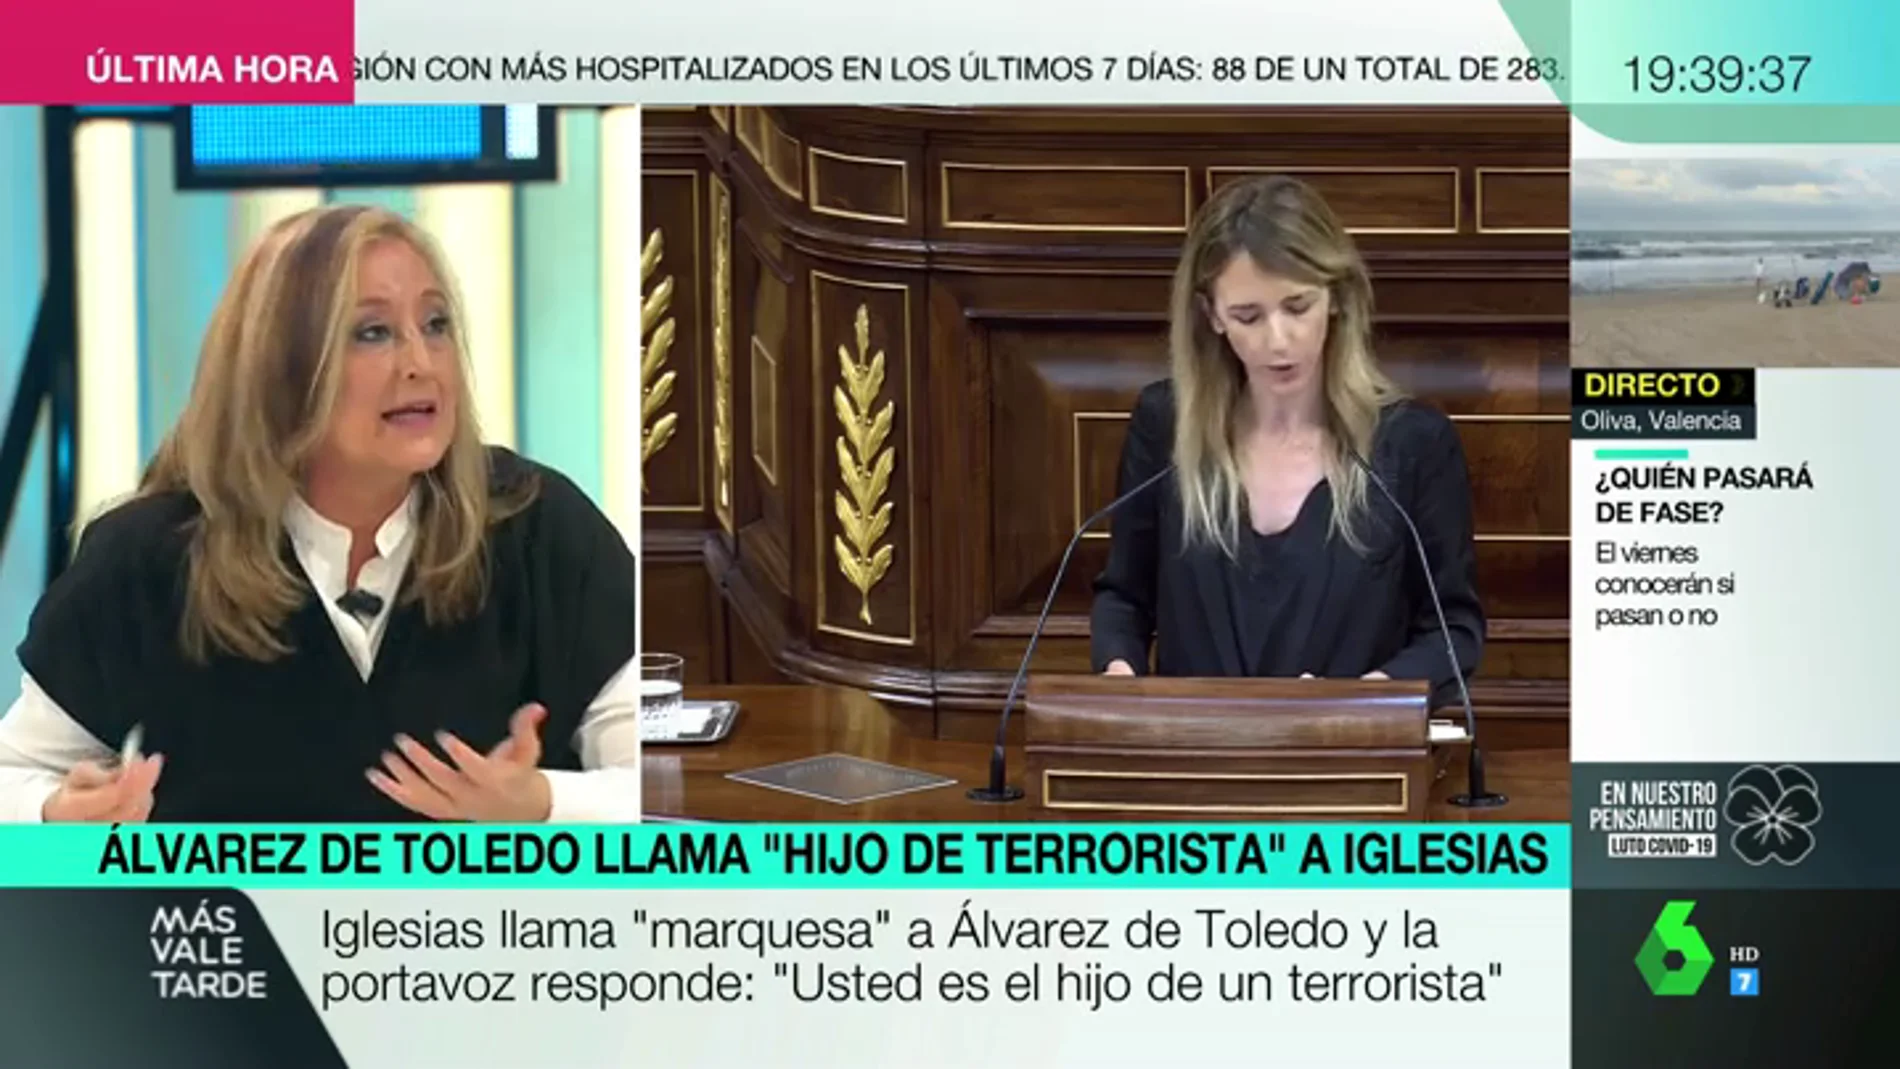 El artículo de la Constitución que "pone difícil" que Álvarez de Toledo sea condenada por llamar "terrorista" al padre de Pablo Iglesias